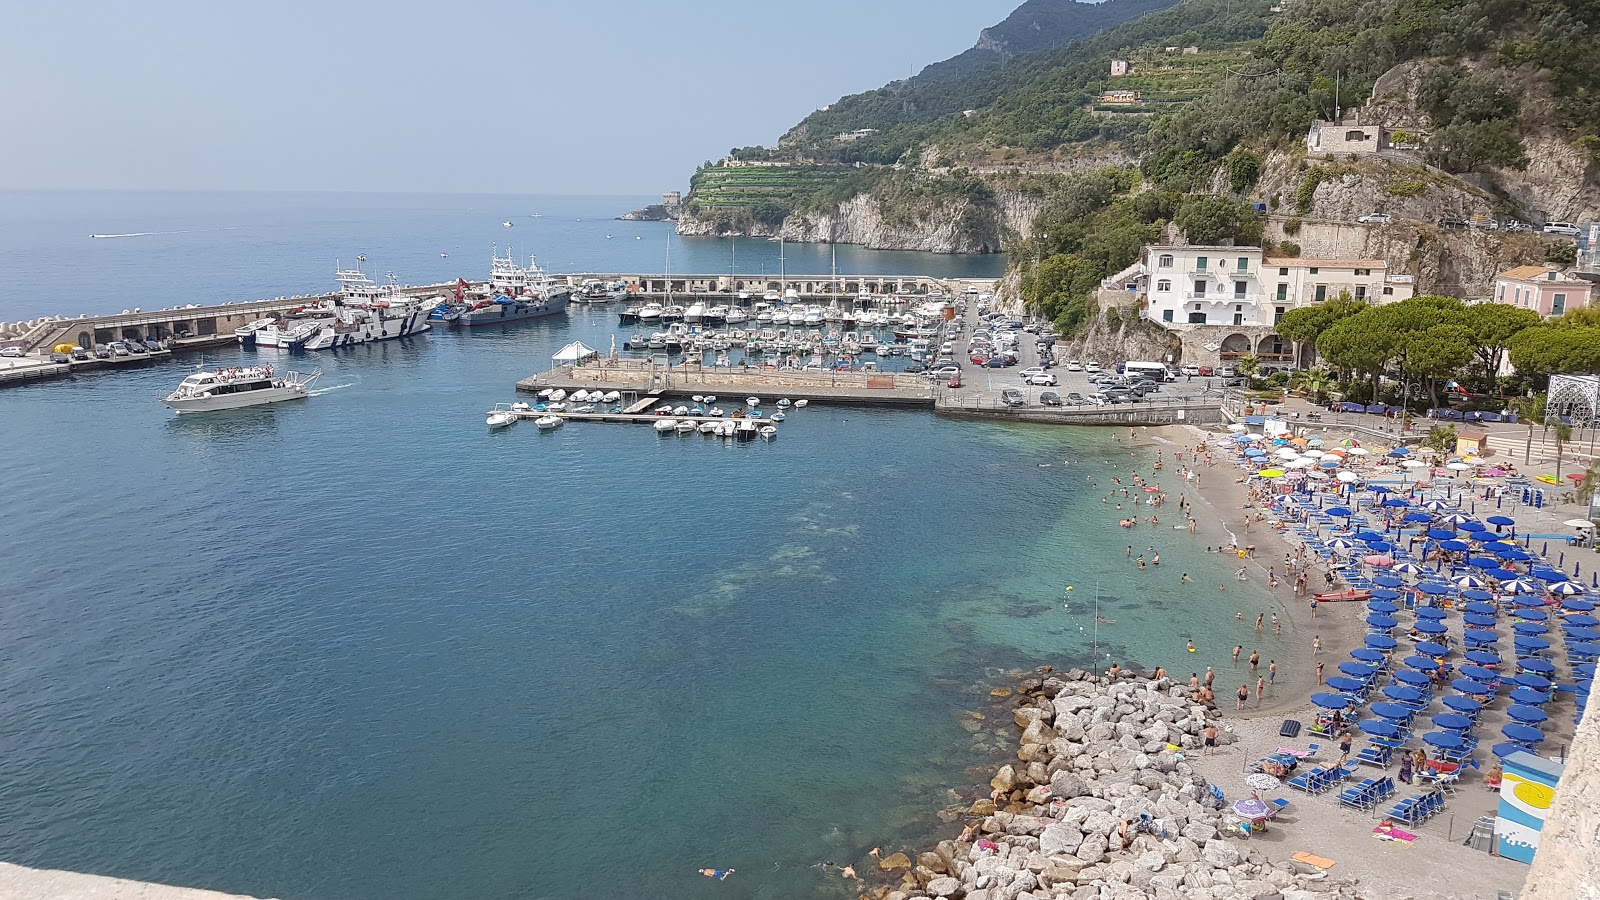 Photo of Spiaggia di Cetera with gray fine pebble surface